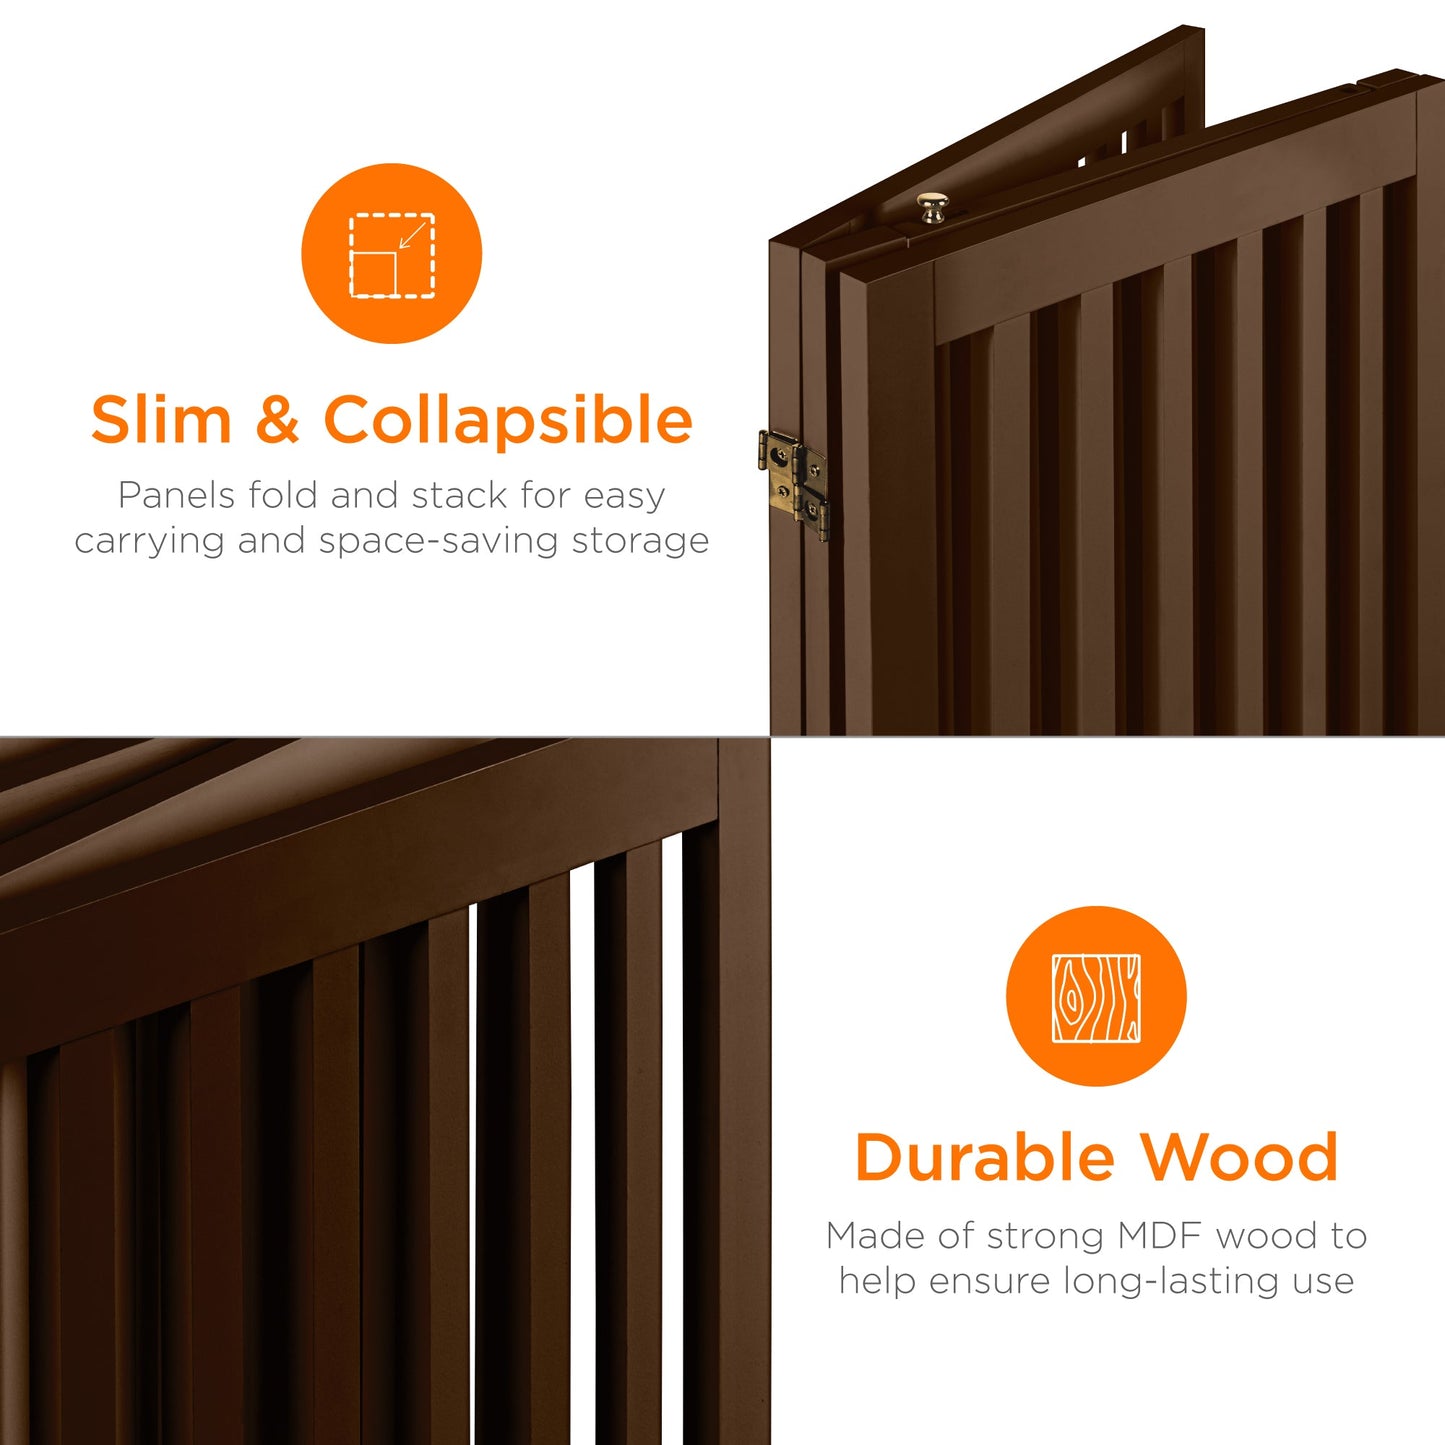 31.5in 3-Panel Freestanding Wooden Pet Gate w/ Door, Support Feet